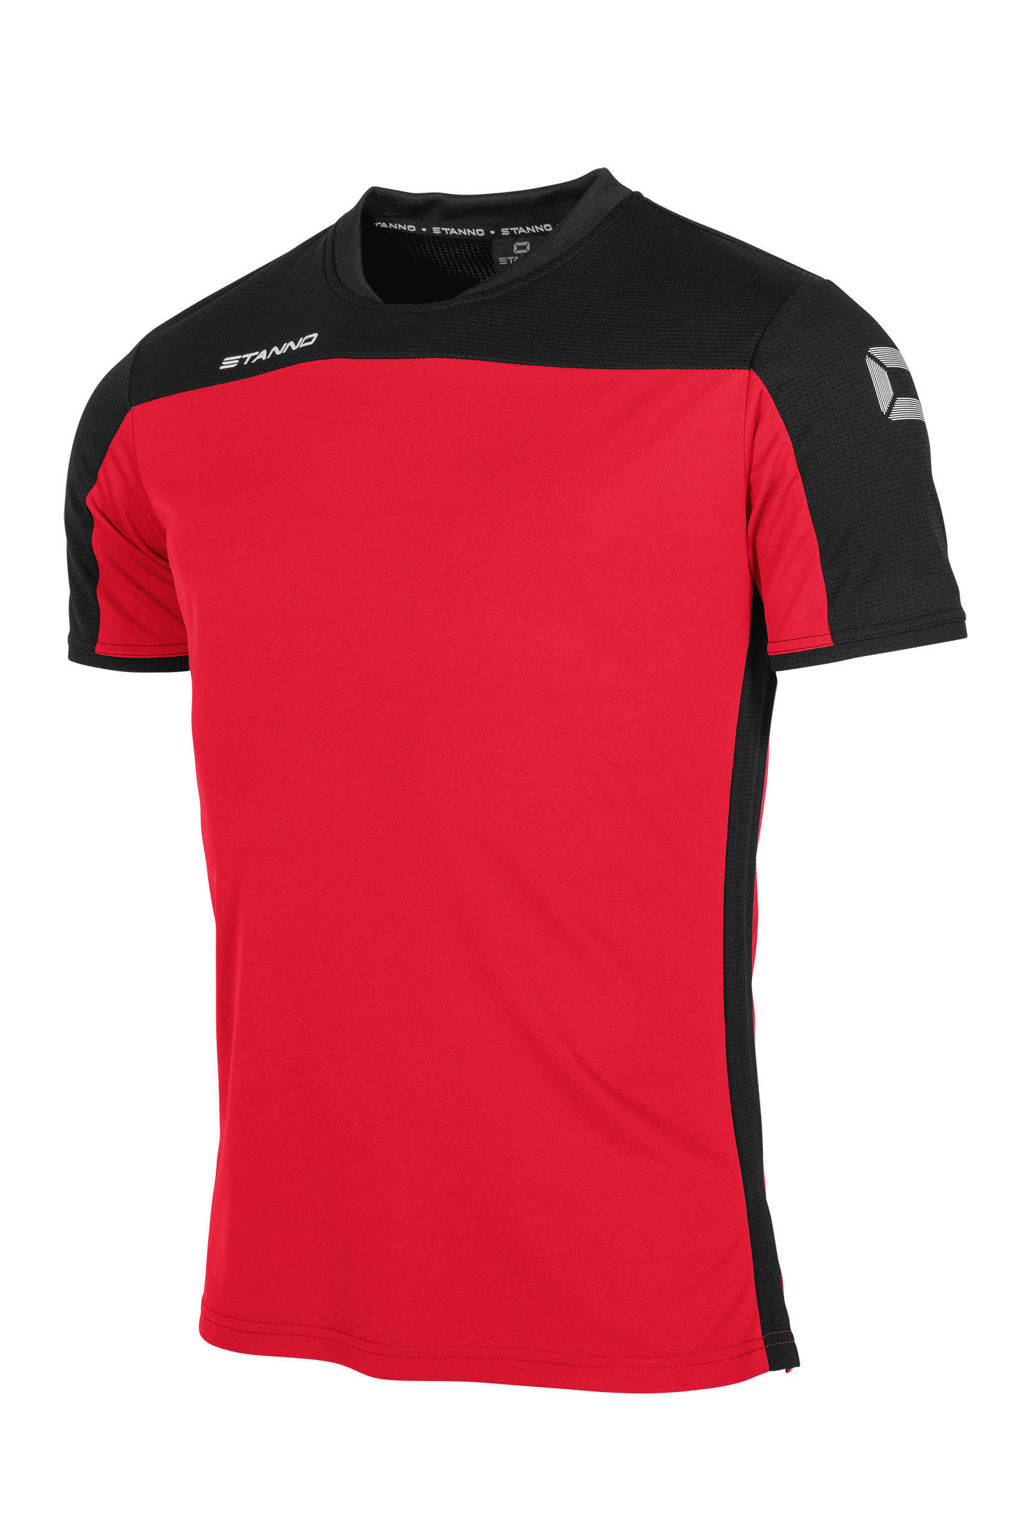 Stanno Junior  voetbalshirt rood/zwart, Rood/zwart